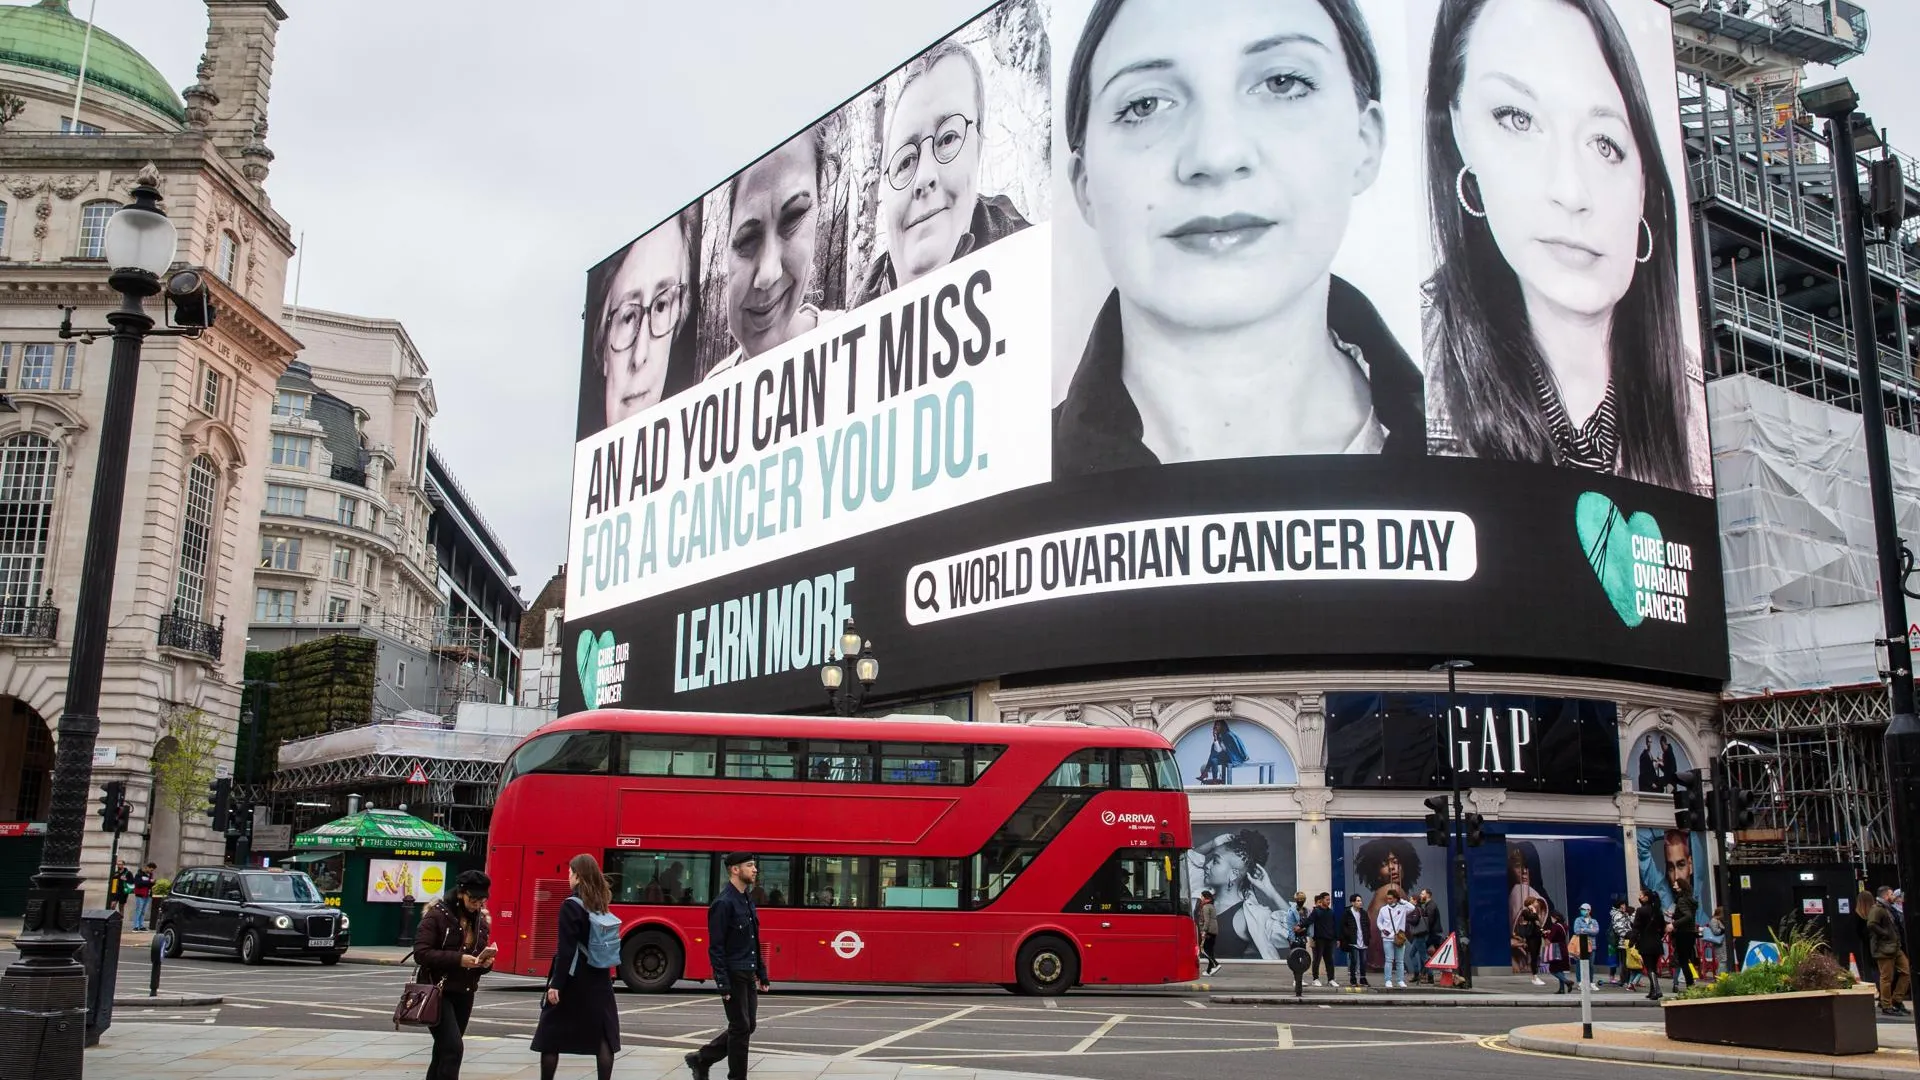 Социальная реклама на улицах Лондона, предупреждающая об опасности игнорирования рака яичников. Фото: Mark Thomas / Parsons Media